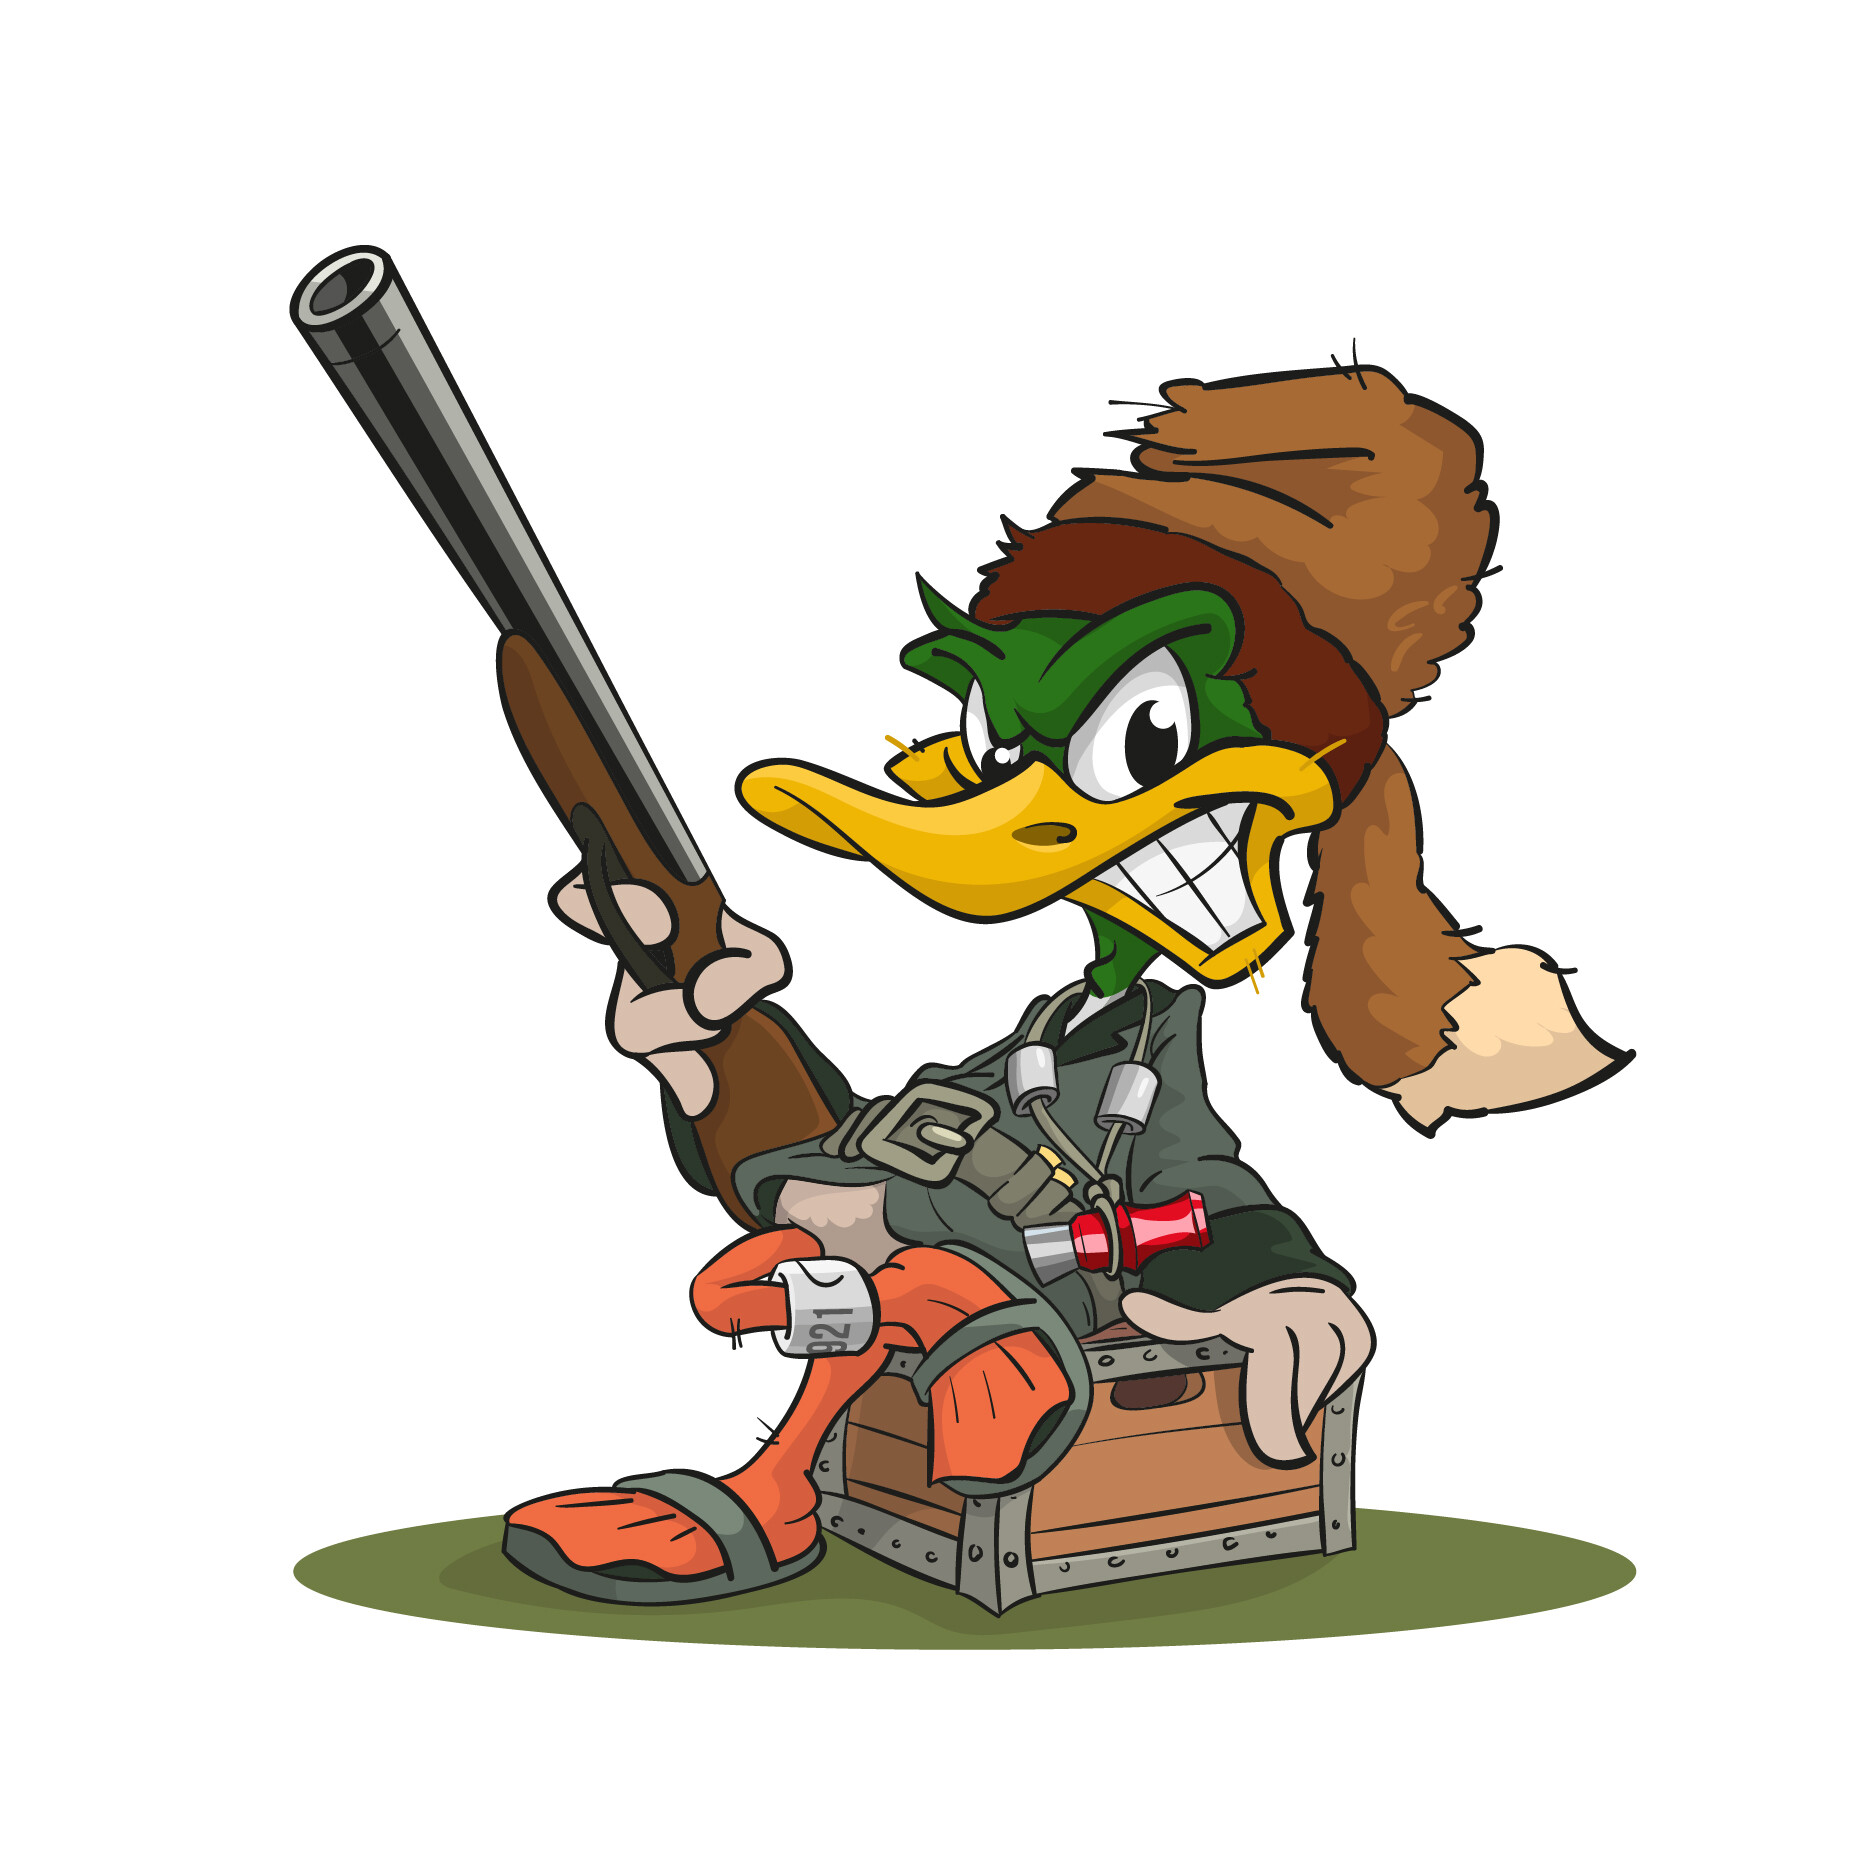 ArtStation - Mascot Duck Hunter